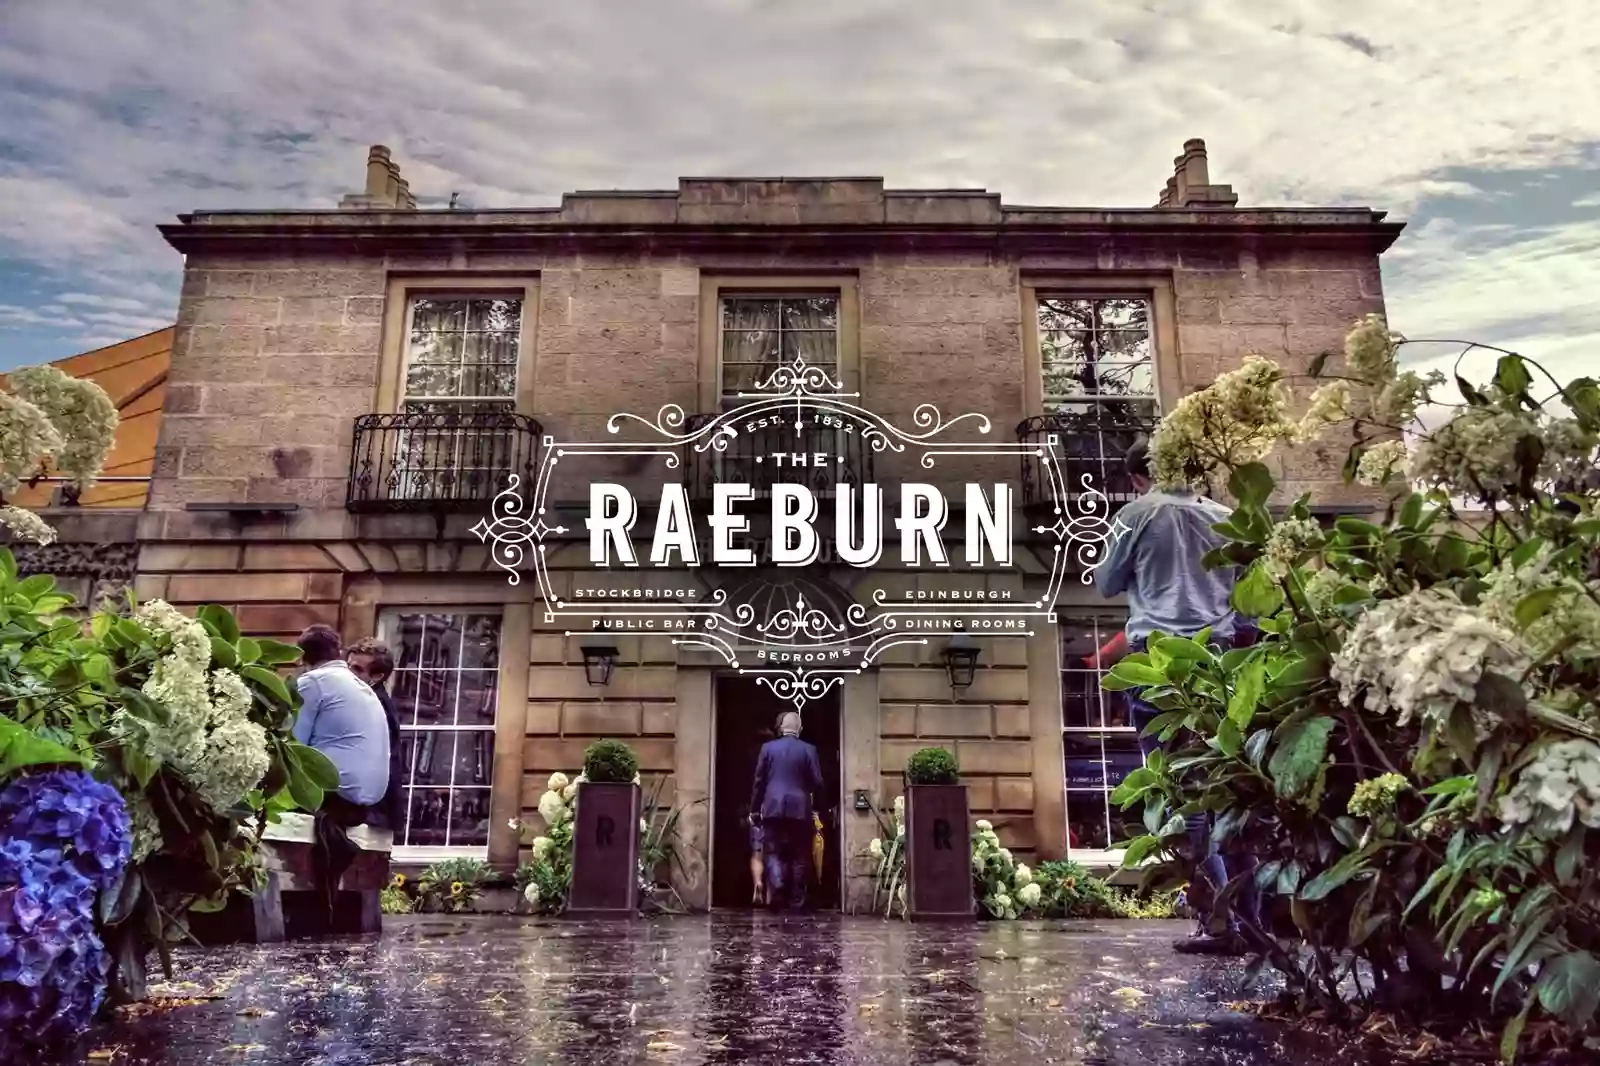 The Raeburn